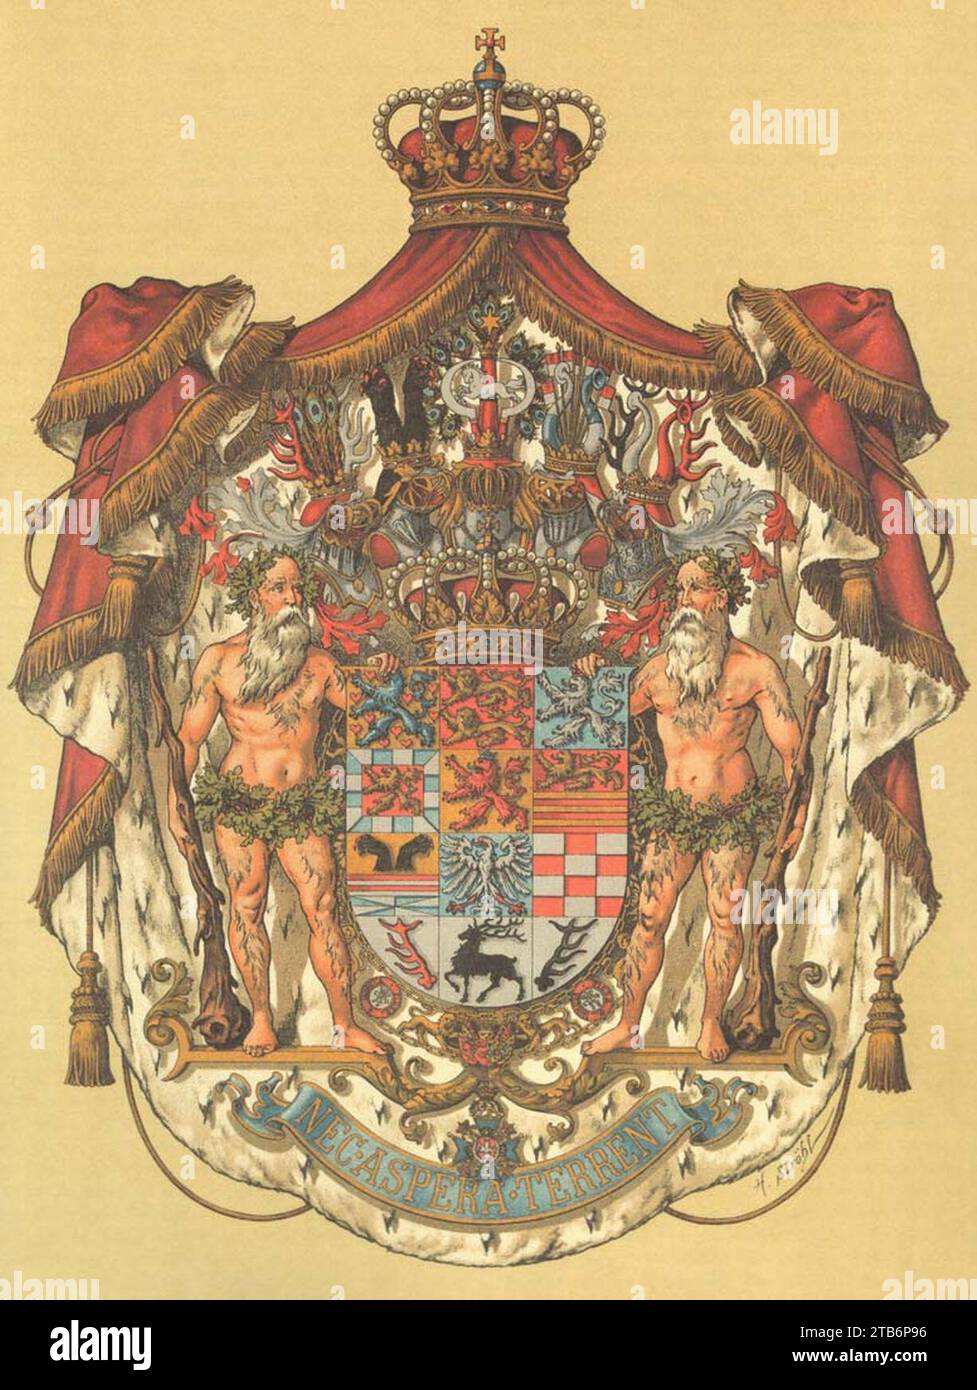 Wappen Deutsches Reich - Herzogtum Braunschweig (Grosses). Stock Photo